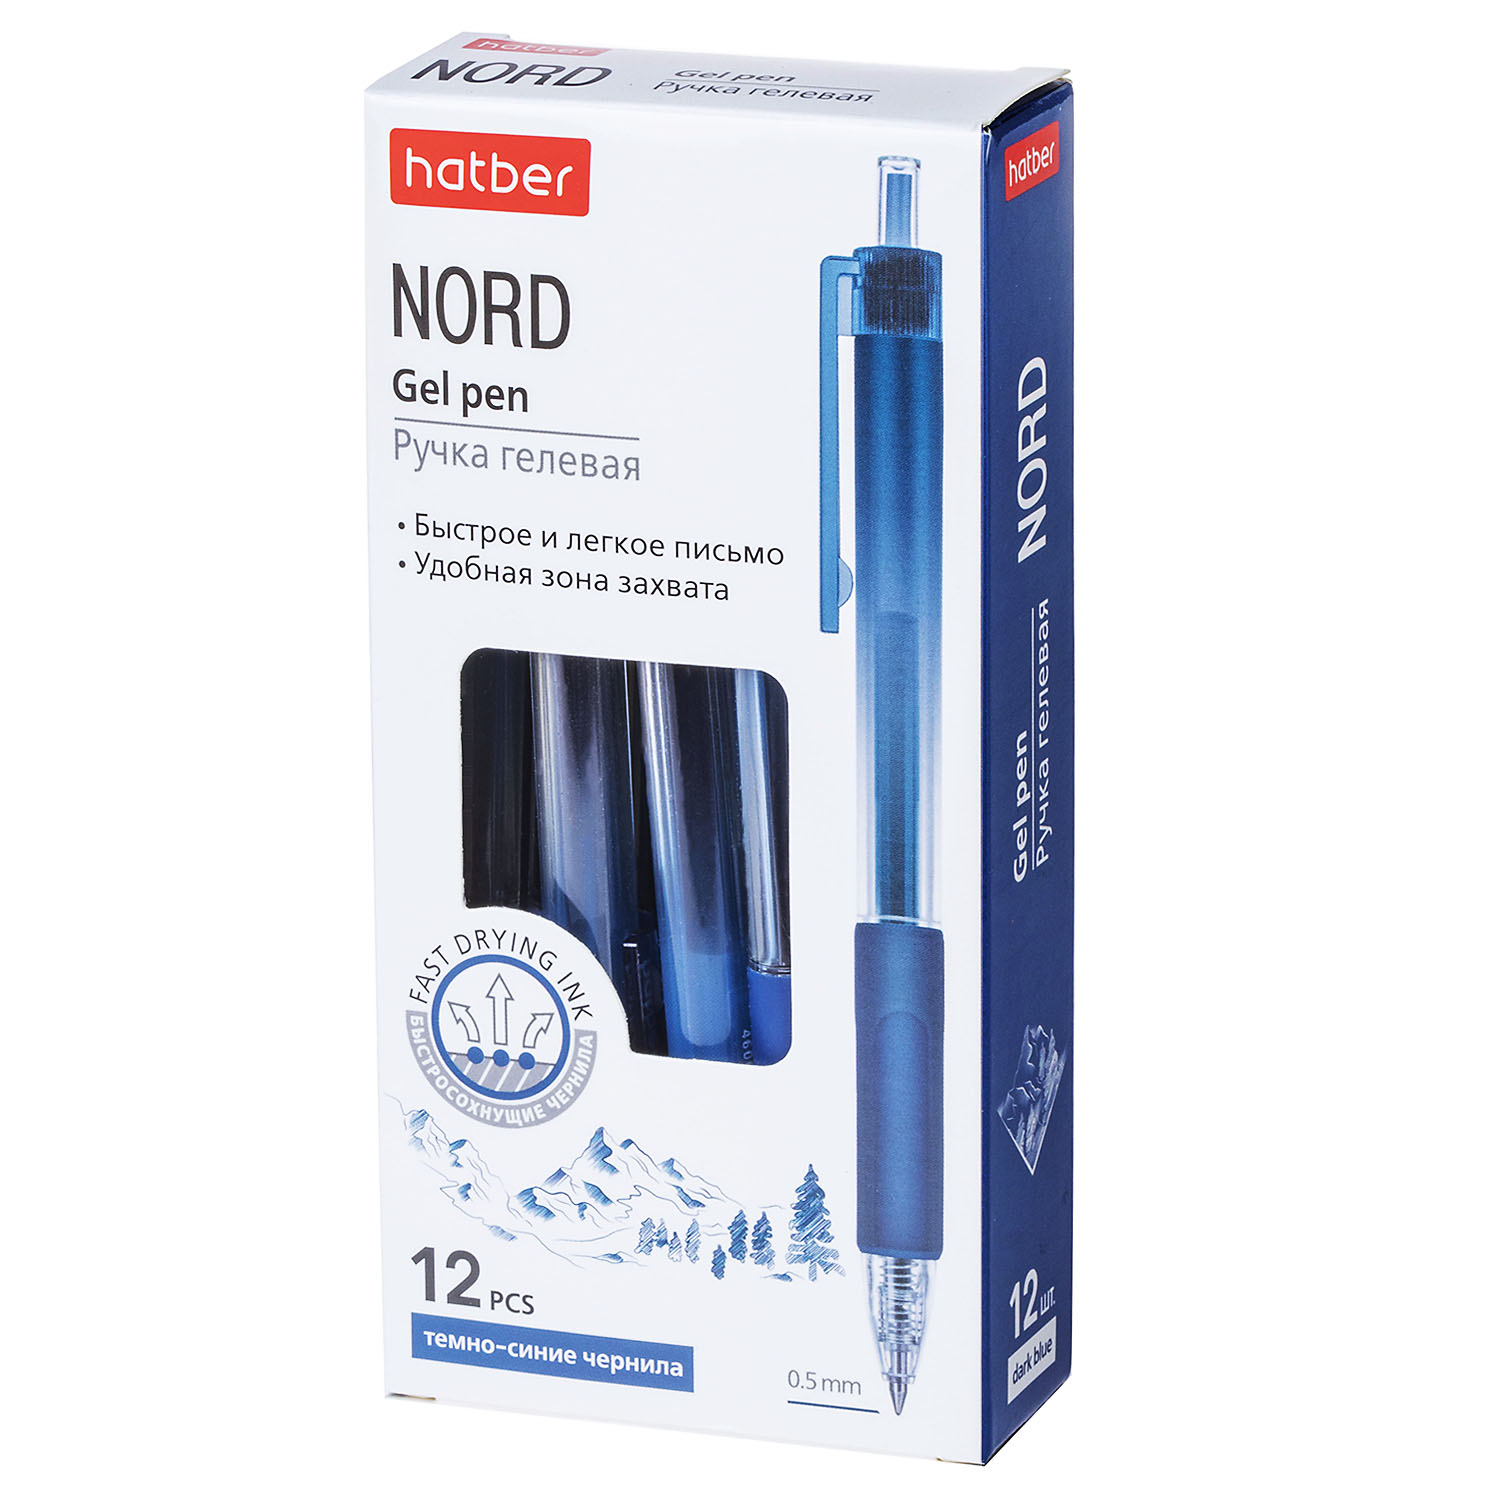 Ручка гелевая  синий 0, 5мм NORD чернила fast dry Hatber